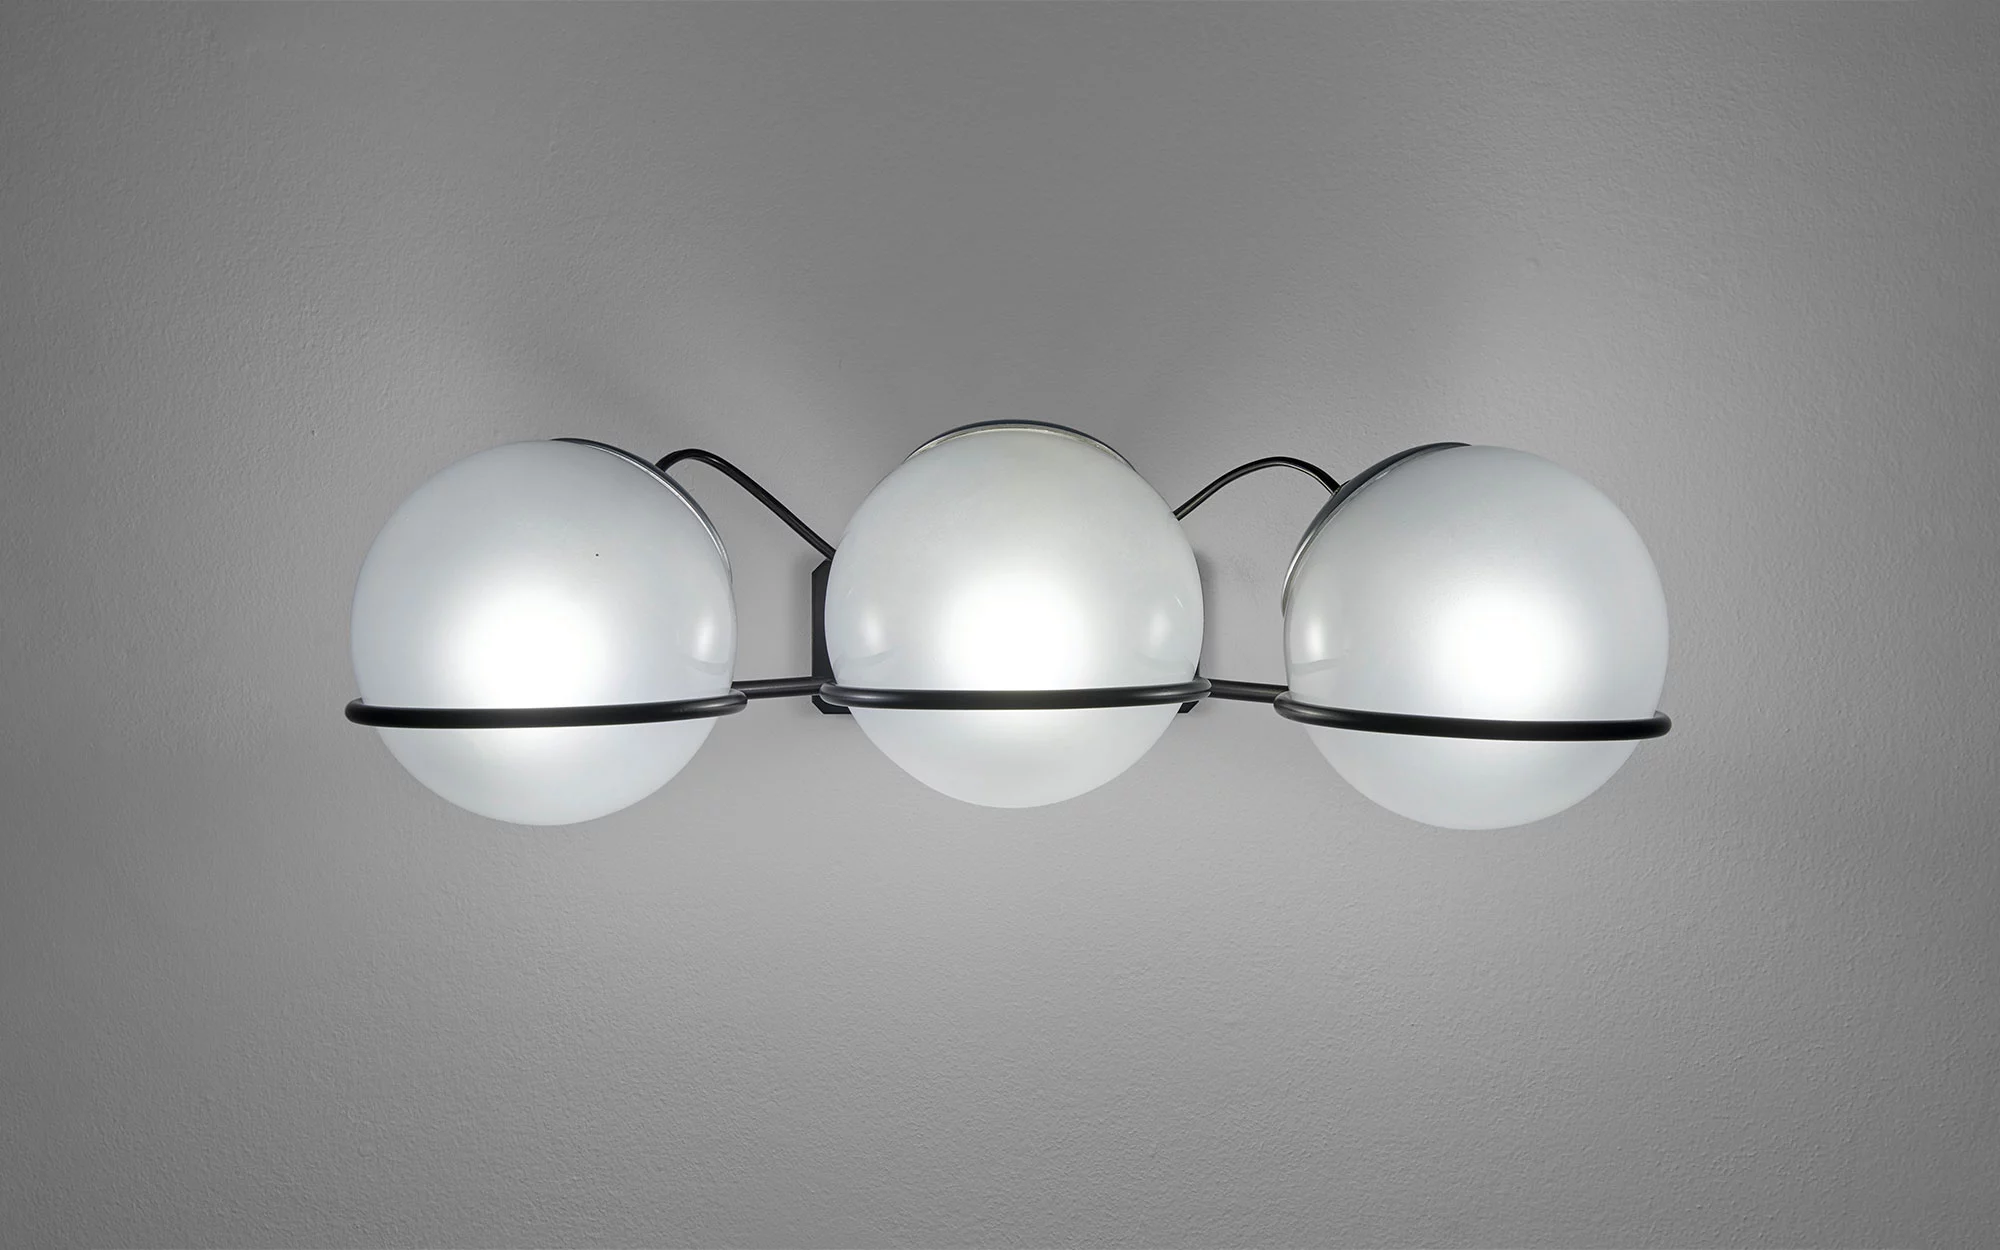 237/3 - Gino Sarfatti - Table light - Galerie kreo